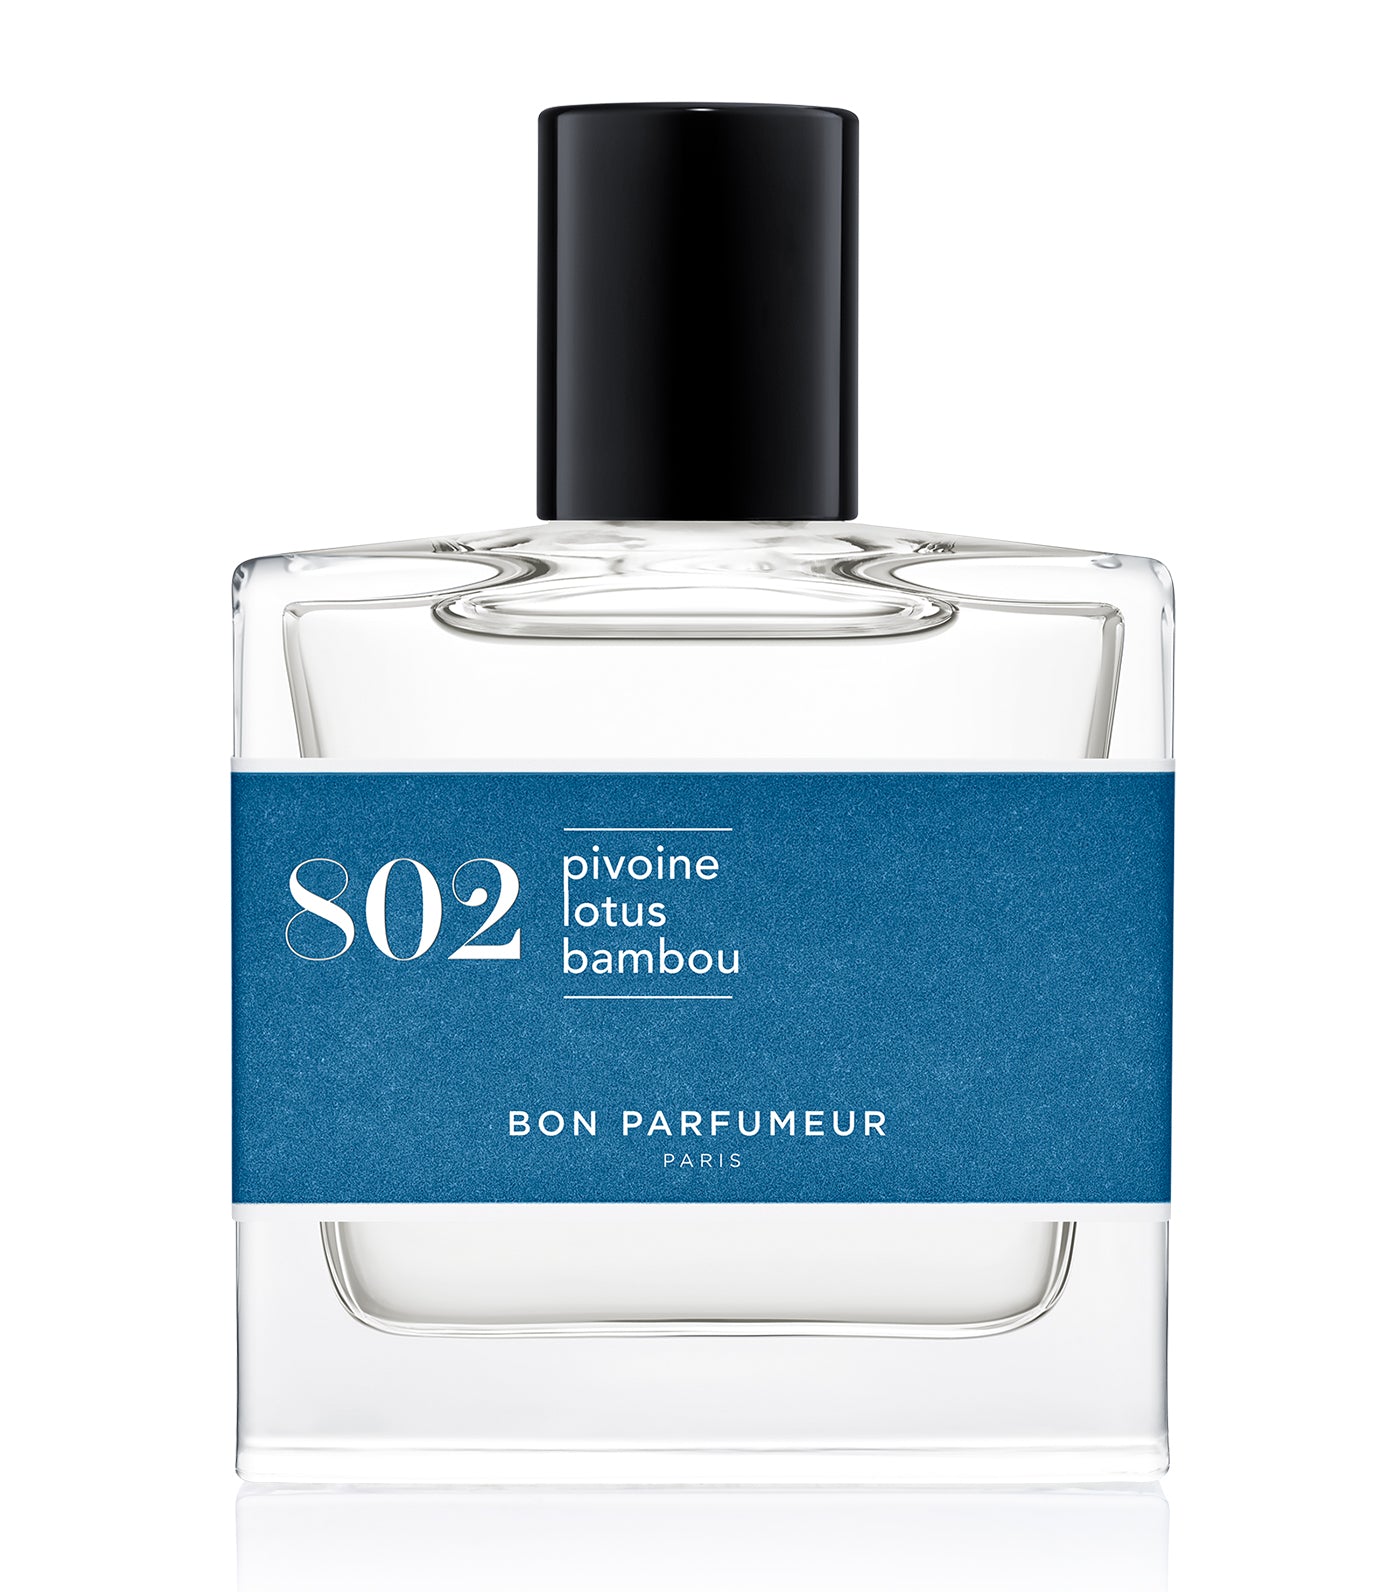 Eau de parfum 802 : peony, lotus and bamboo